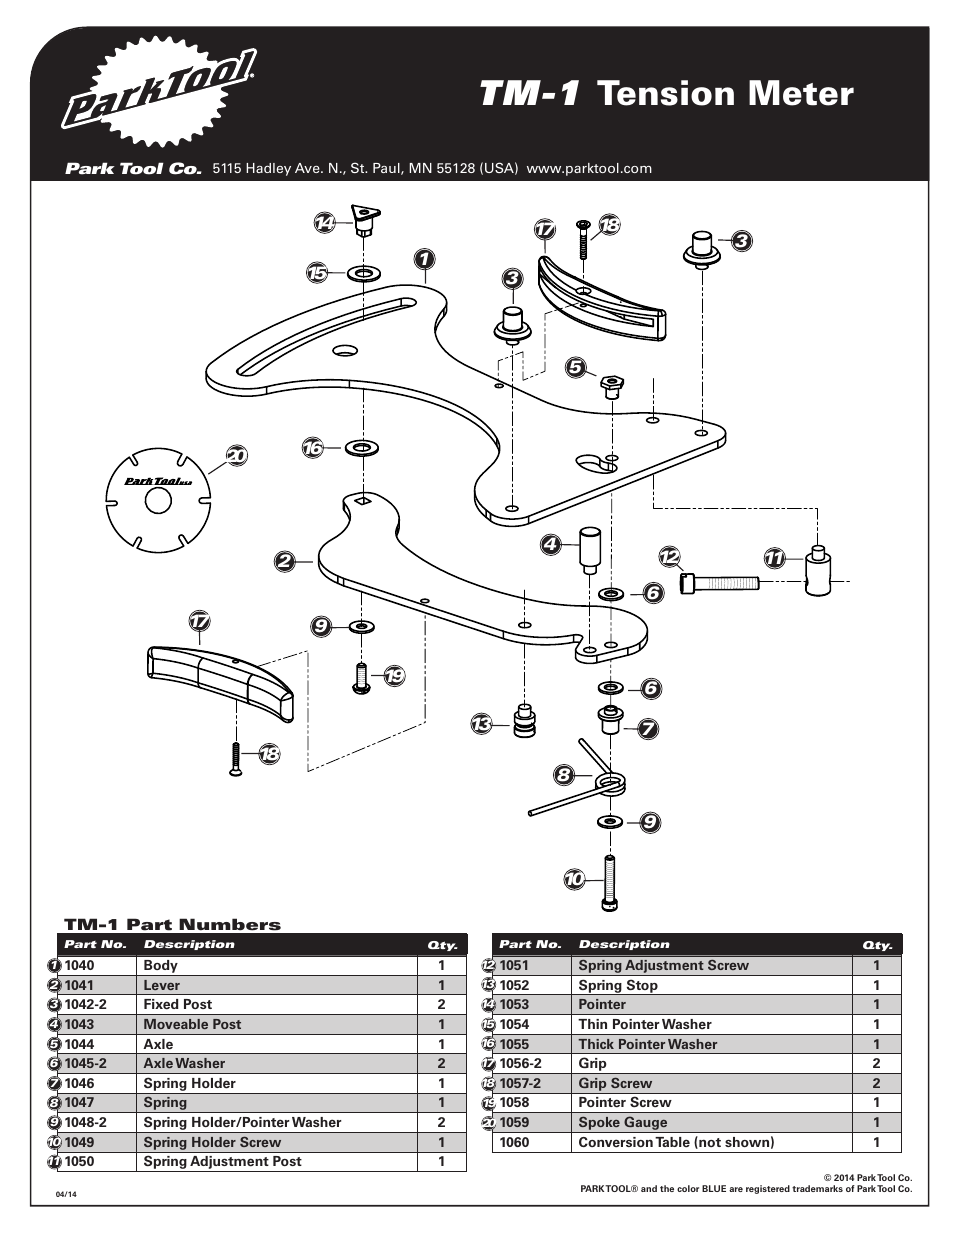 Tm-1 tension meter | Park Tool Spoke Tension Meter User Manual | Page 6 / 6  | Original mode